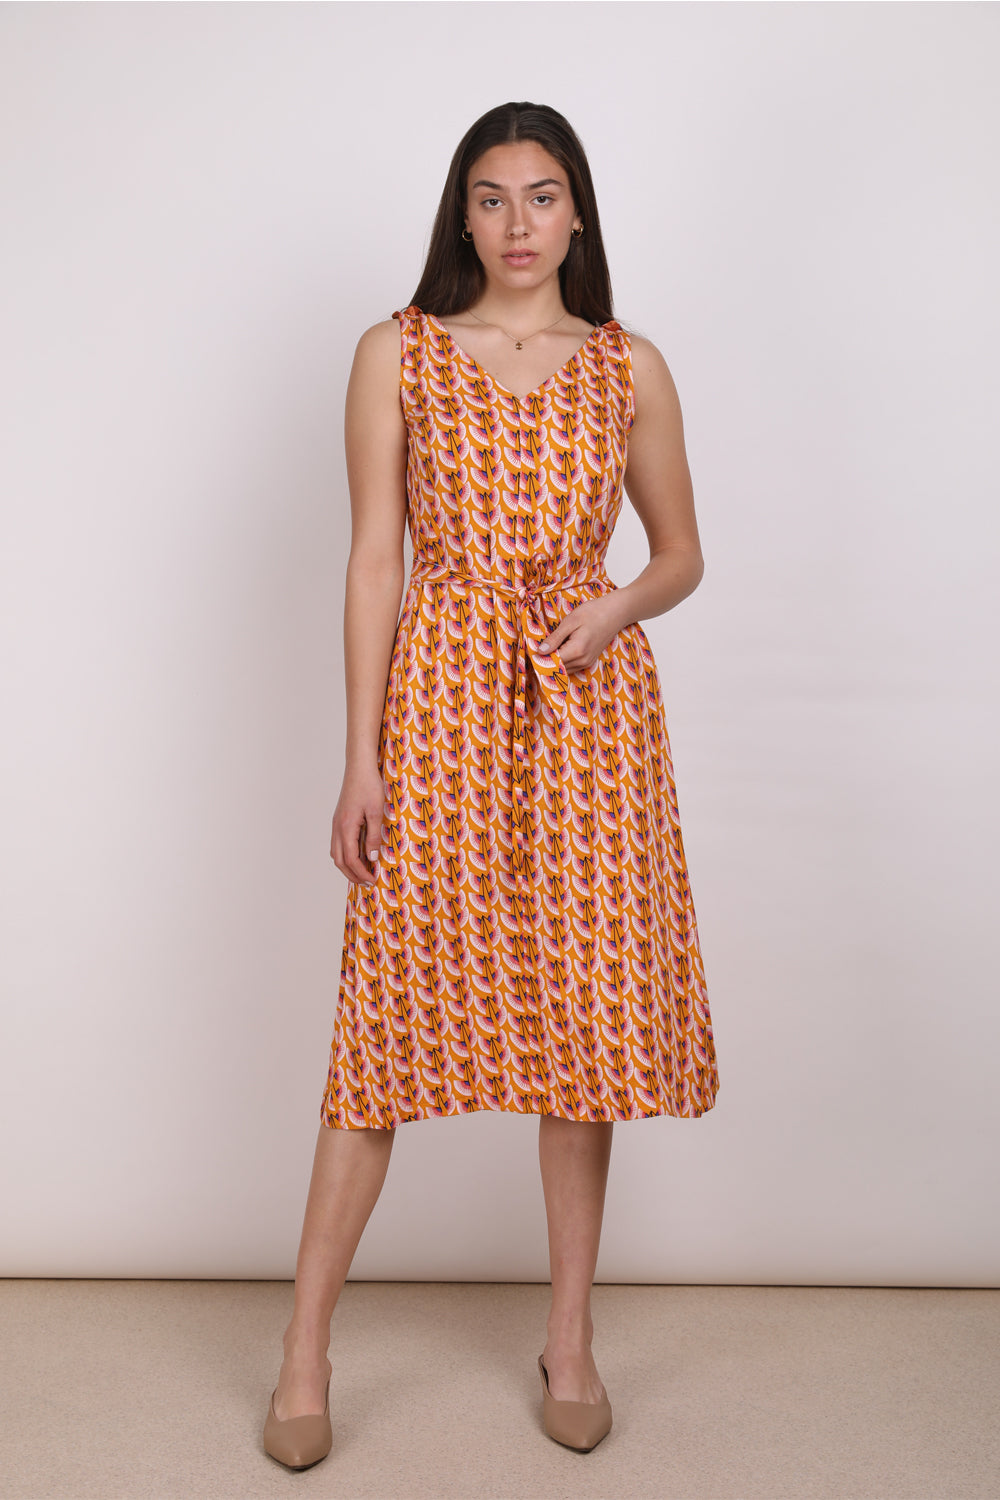 שמלת  קיץ מודפסת בצבע חרדל  - שמלת לולה